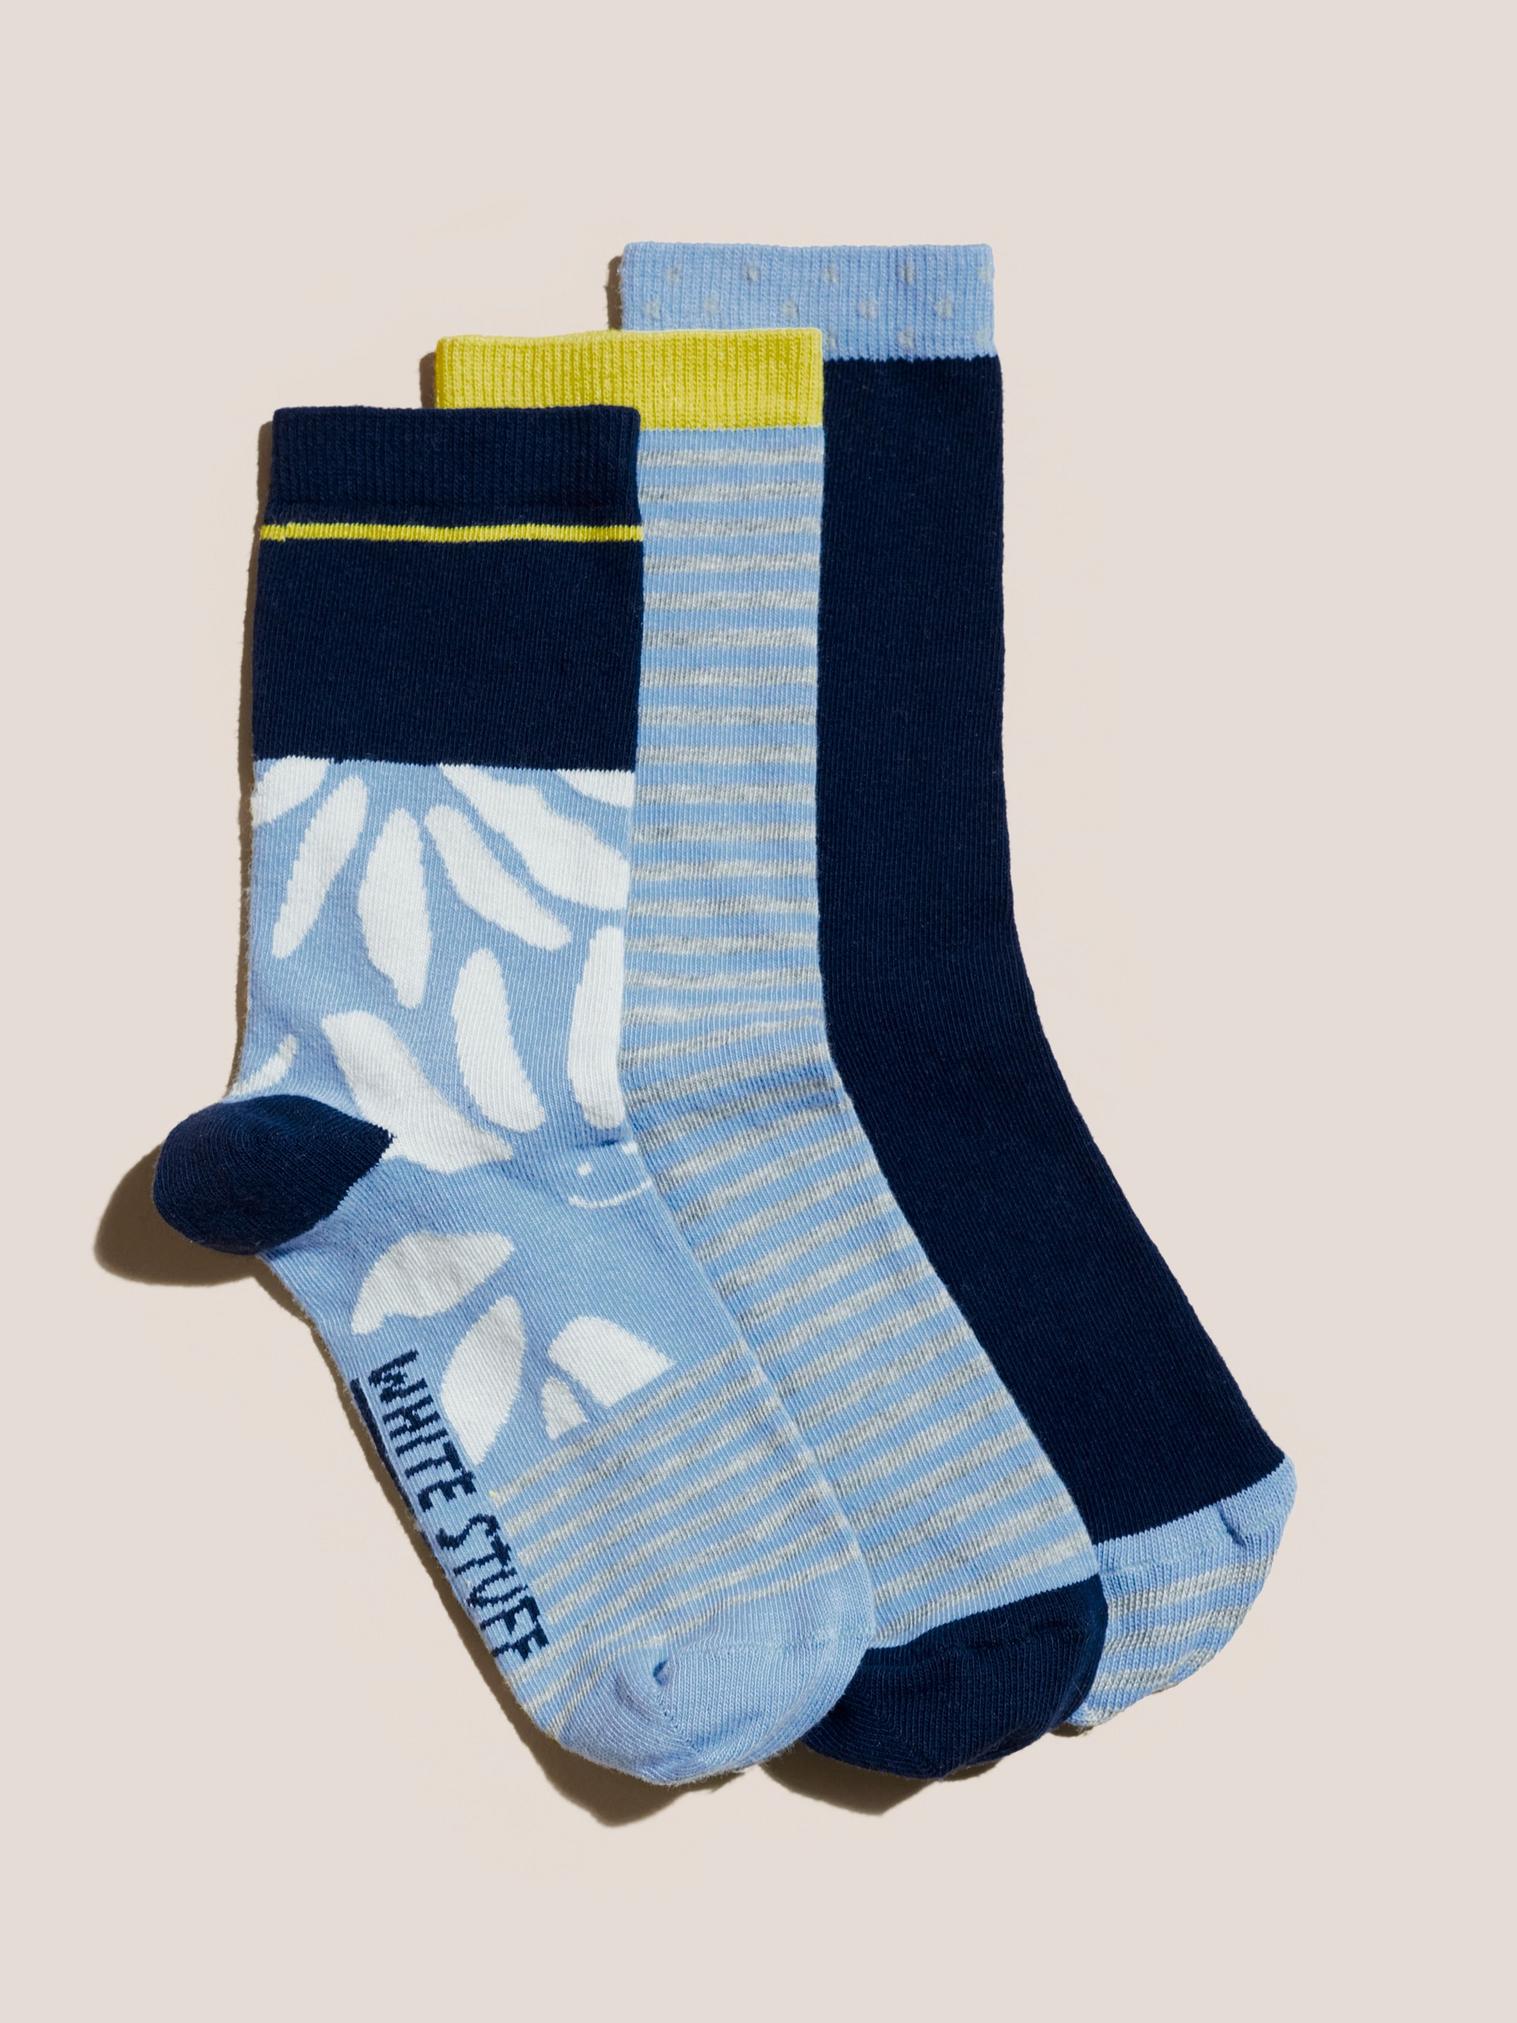 Smiley Daisy 3pk Socks in BLUE MLT - FLAT FRONT